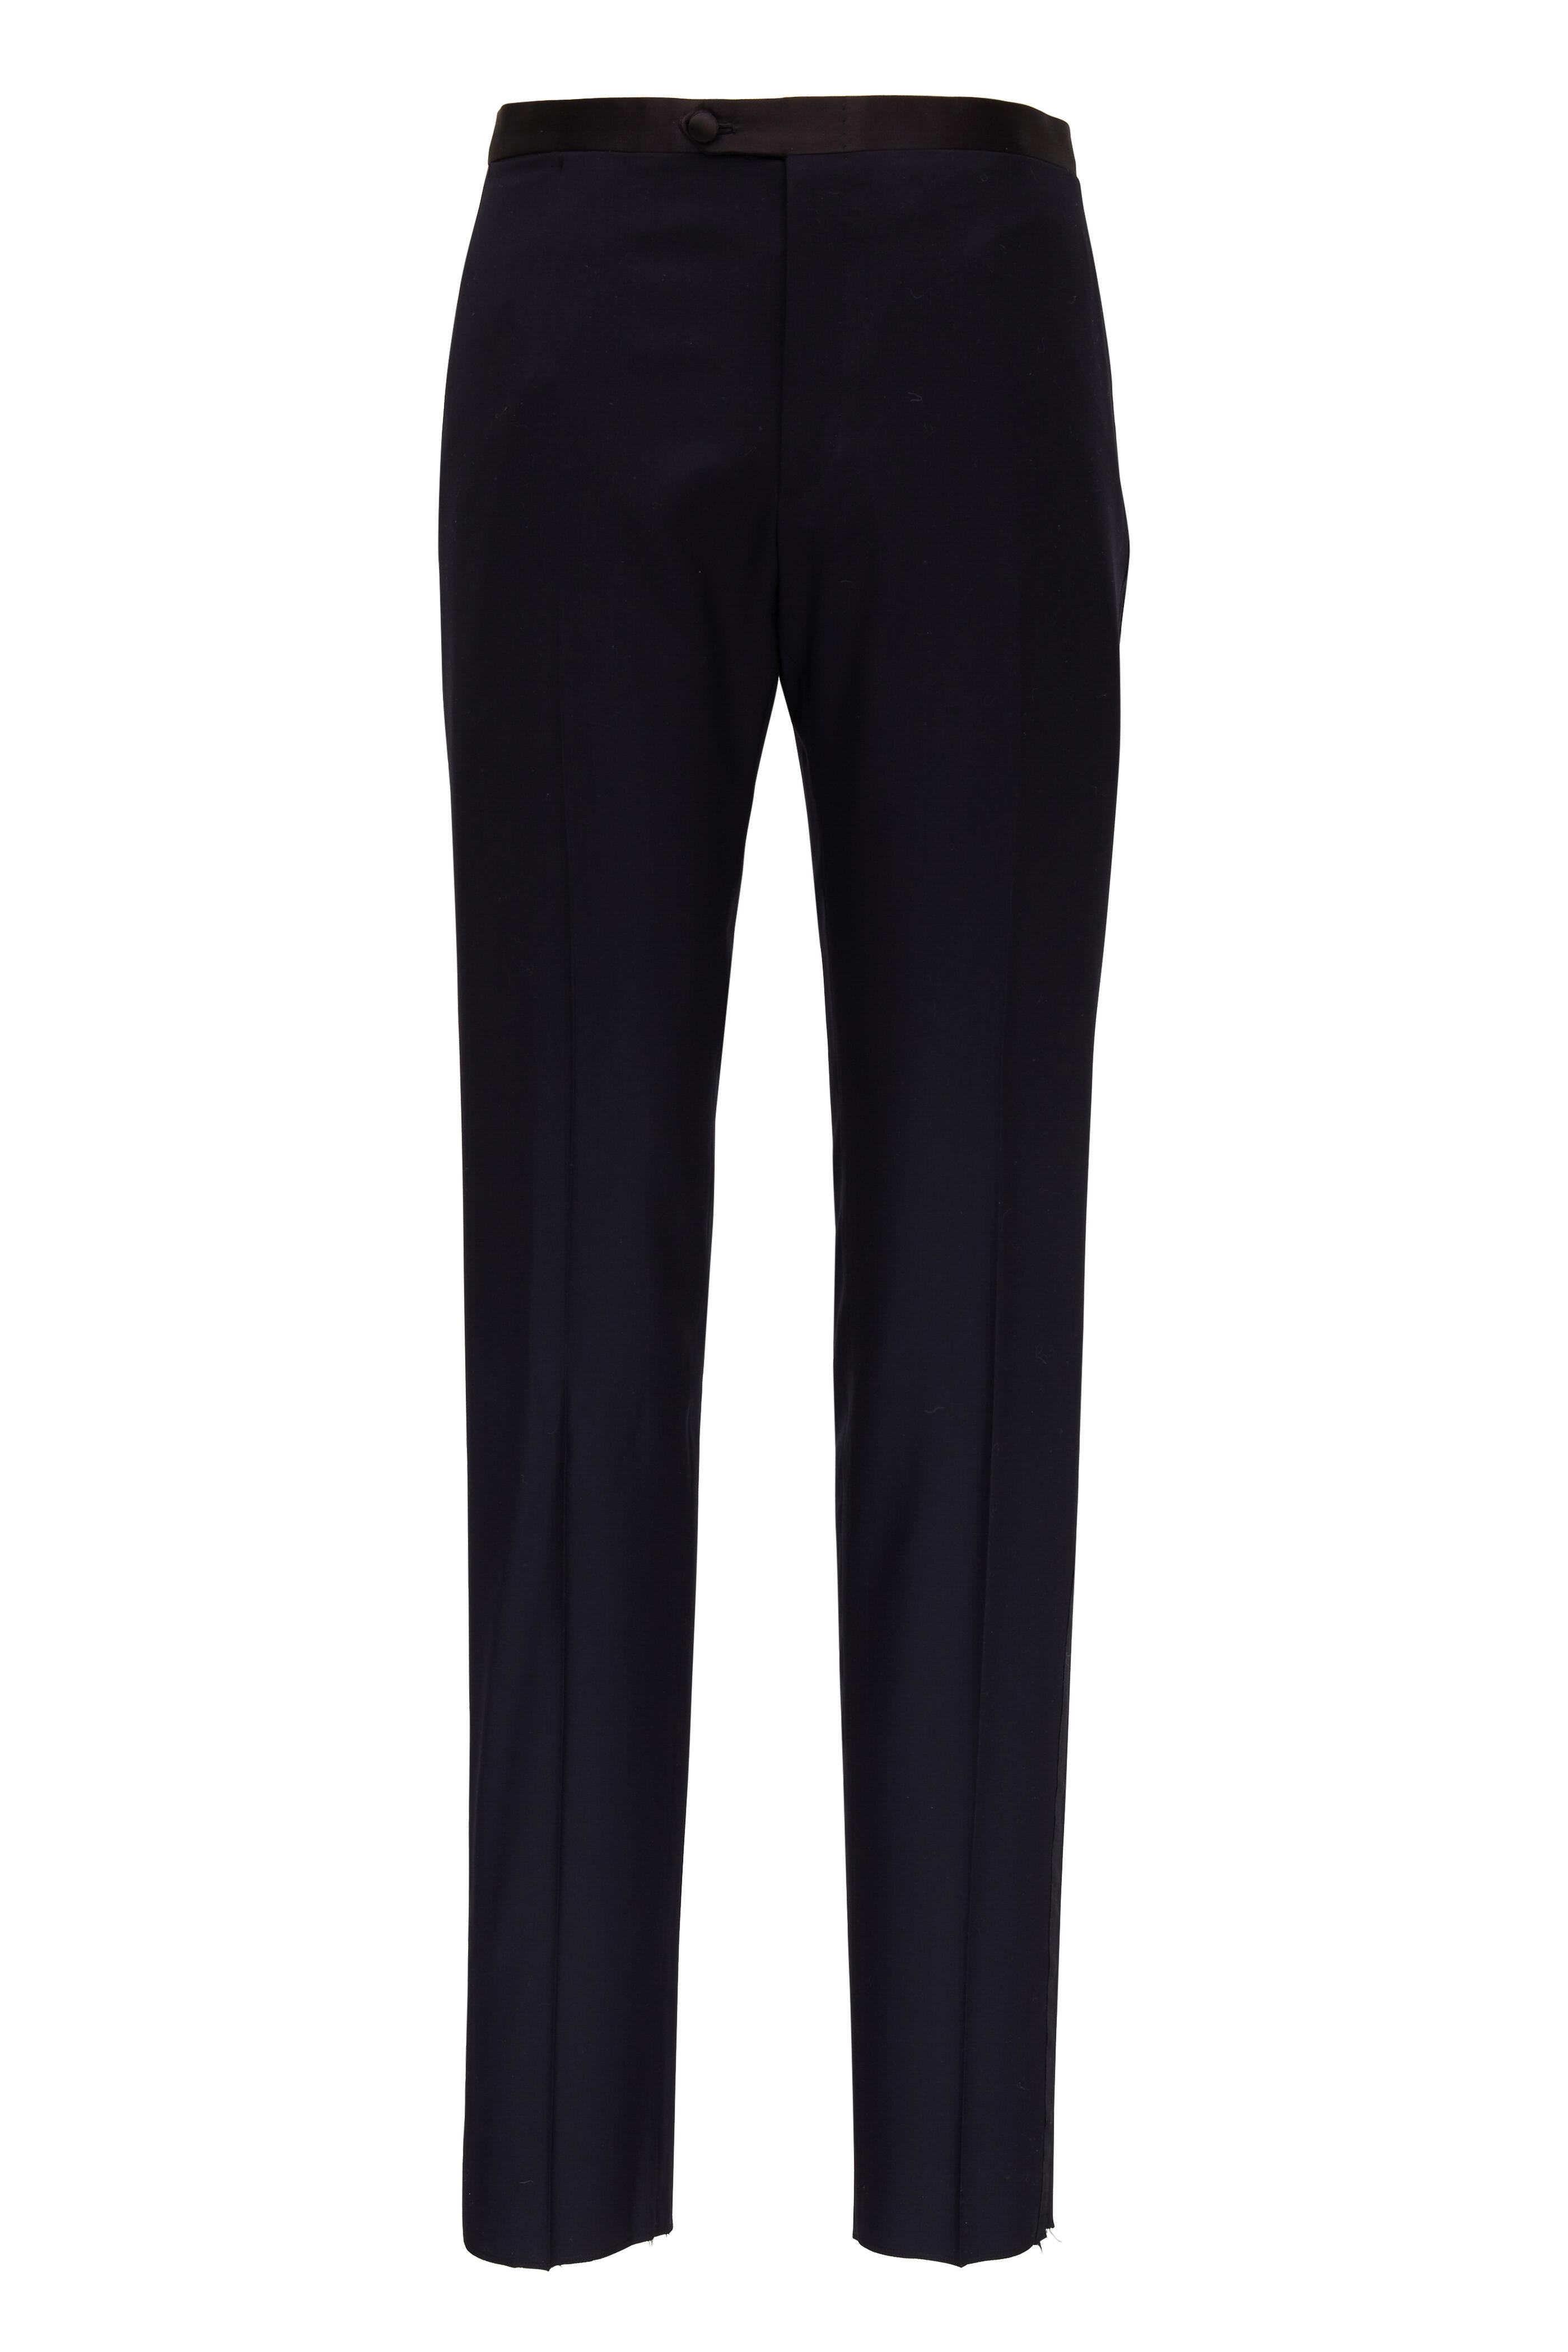 Kiton - Black Cashmere Tuxedo | Mitchell Stores